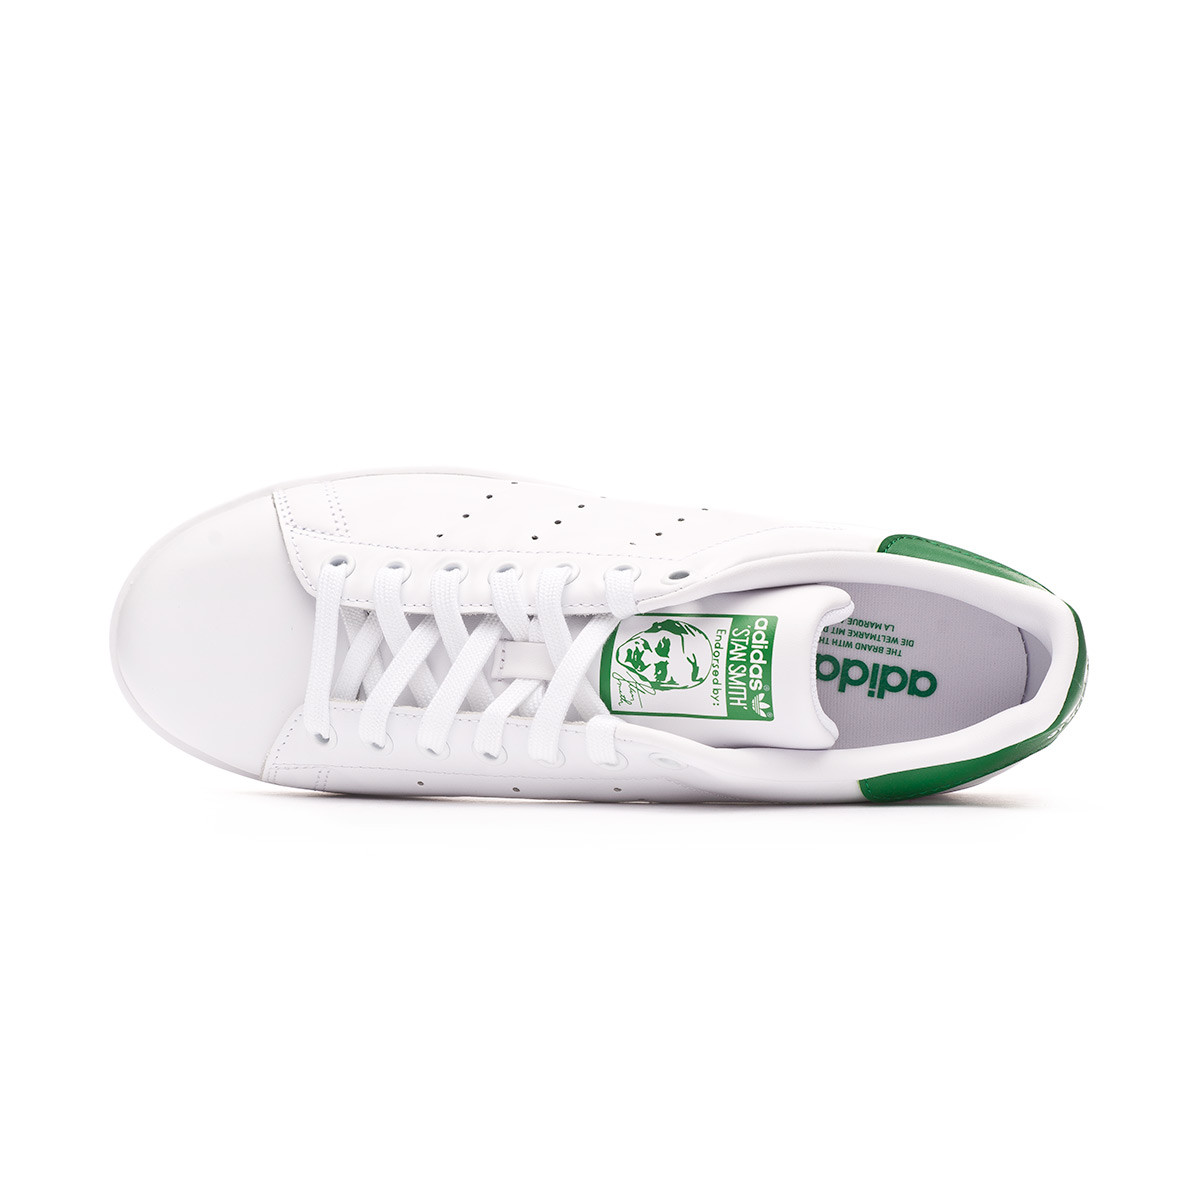 adidas stan smith white green